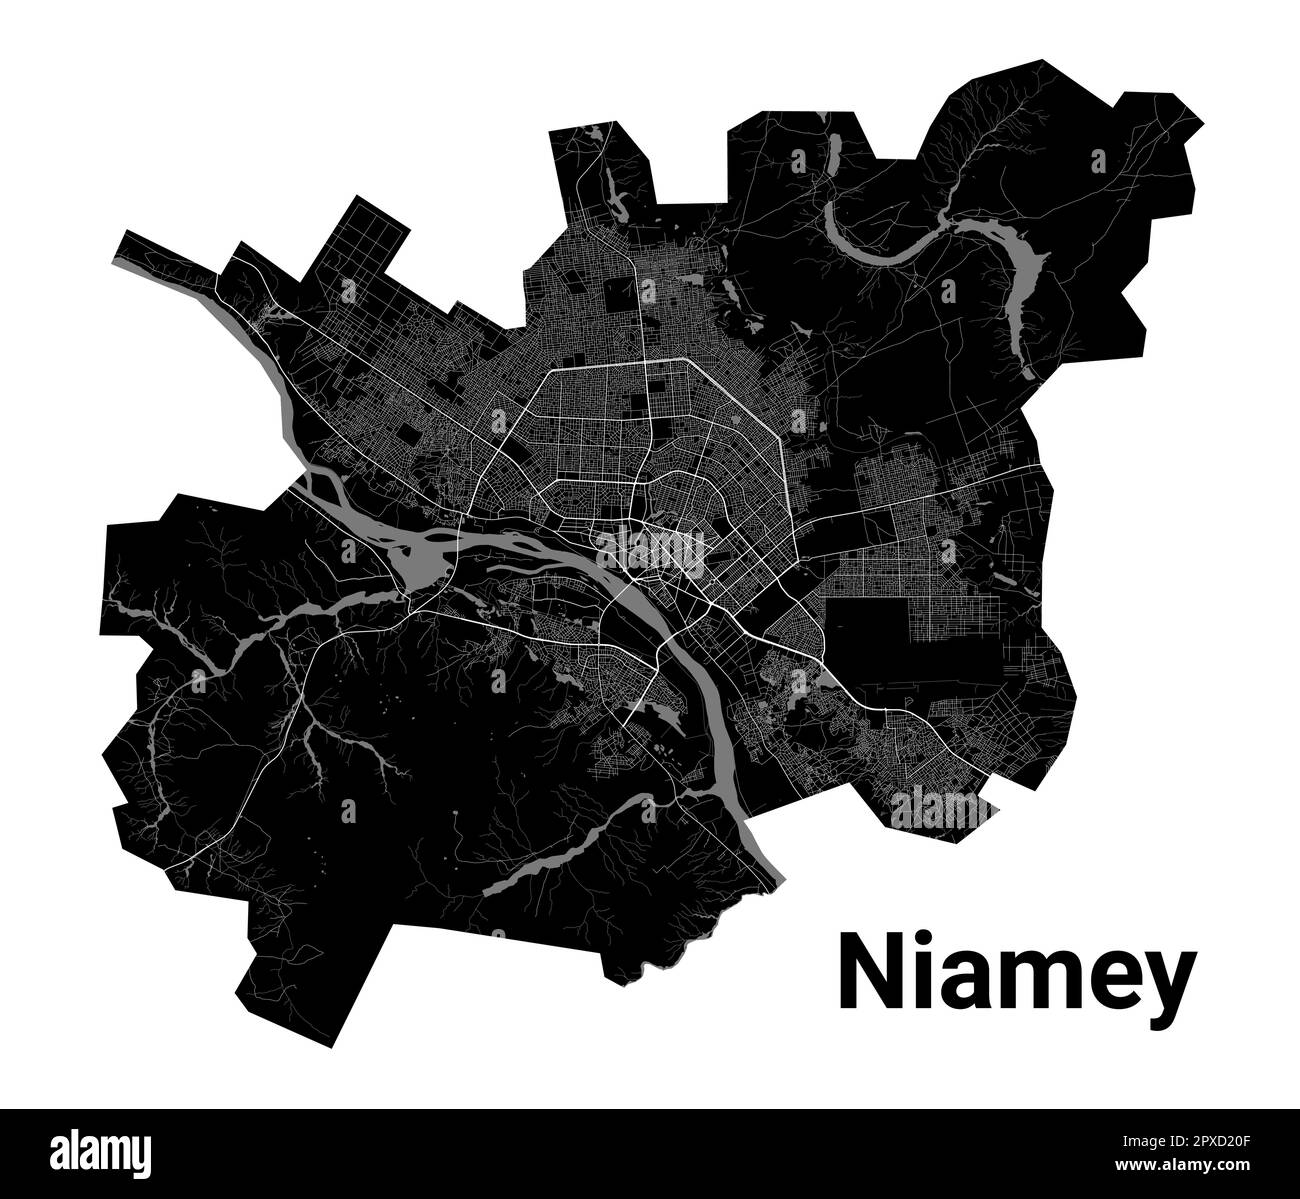 Carte de la ville de Niamey, capitale du Niger. Frontières administratives municipales, carte des zones en noir et blanc avec rivières et routes, parcs et chemins de fer. Vecteur illust Illustration de Vecteur